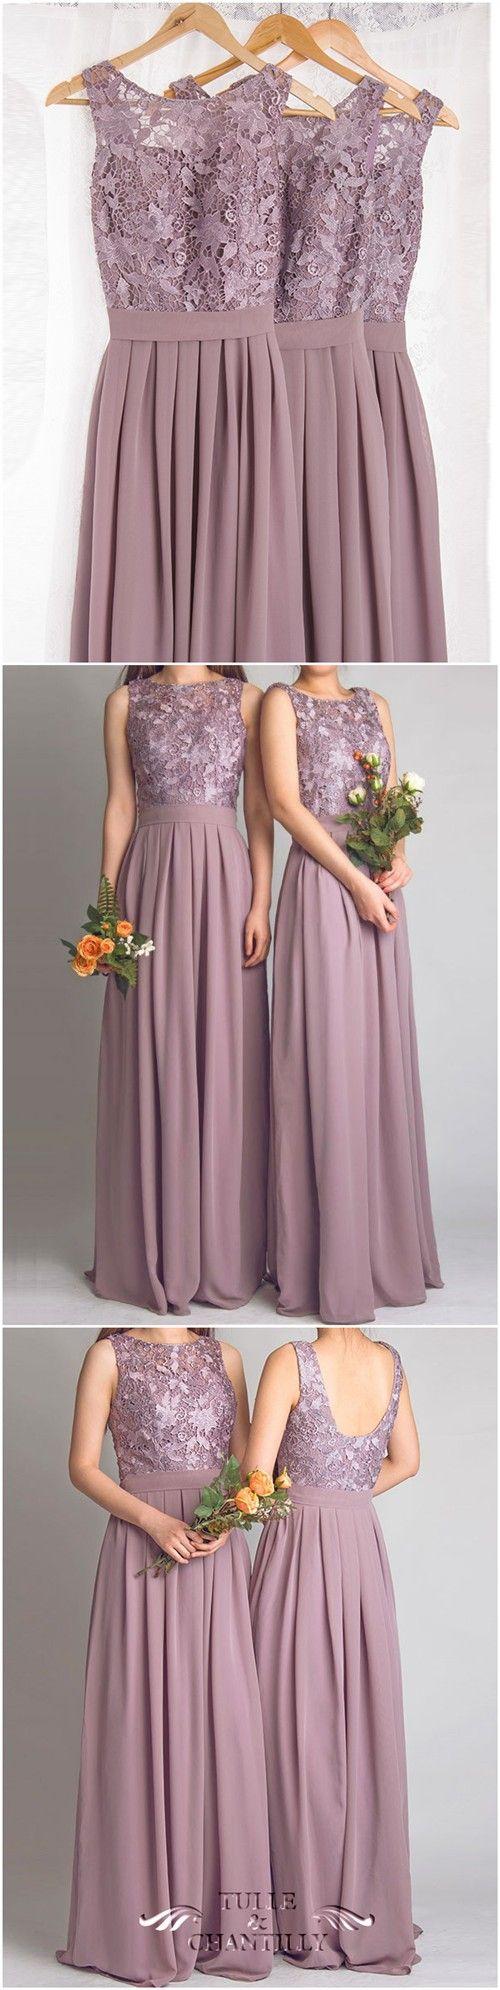 زفاف - Dramatic Vintage Lace Bridesmaid Dress With Flowing Chiffon Skirt [TBQP227] - $169.00 : Custom Made Wedding, Prom, Evening Dresses Online